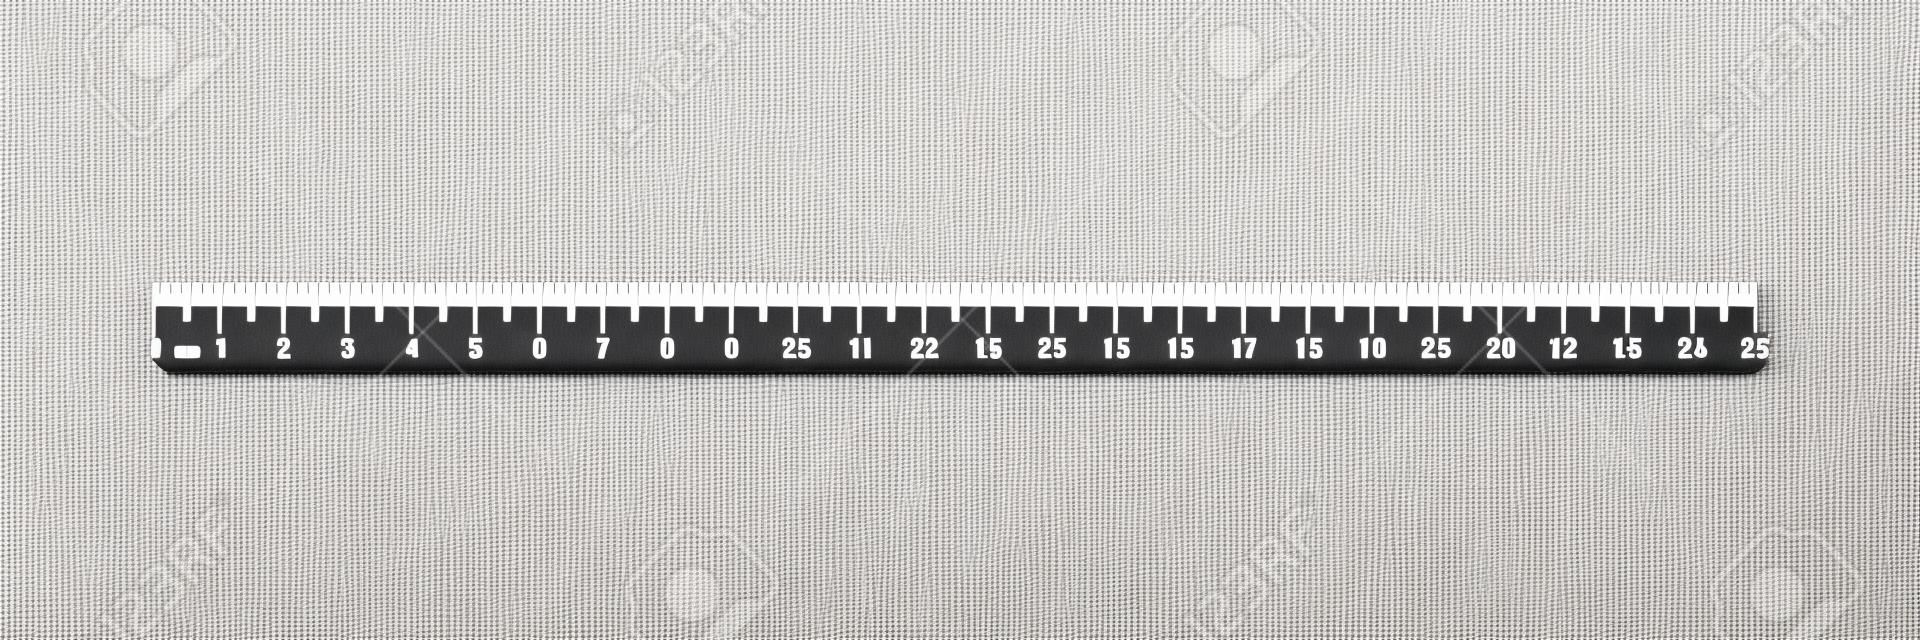 定規25 cm.測定ツール。ルーラーグリッド 25 cmサイズインジケータユニット。メートルセンチサイズインジケータ。ベクトルEPS10